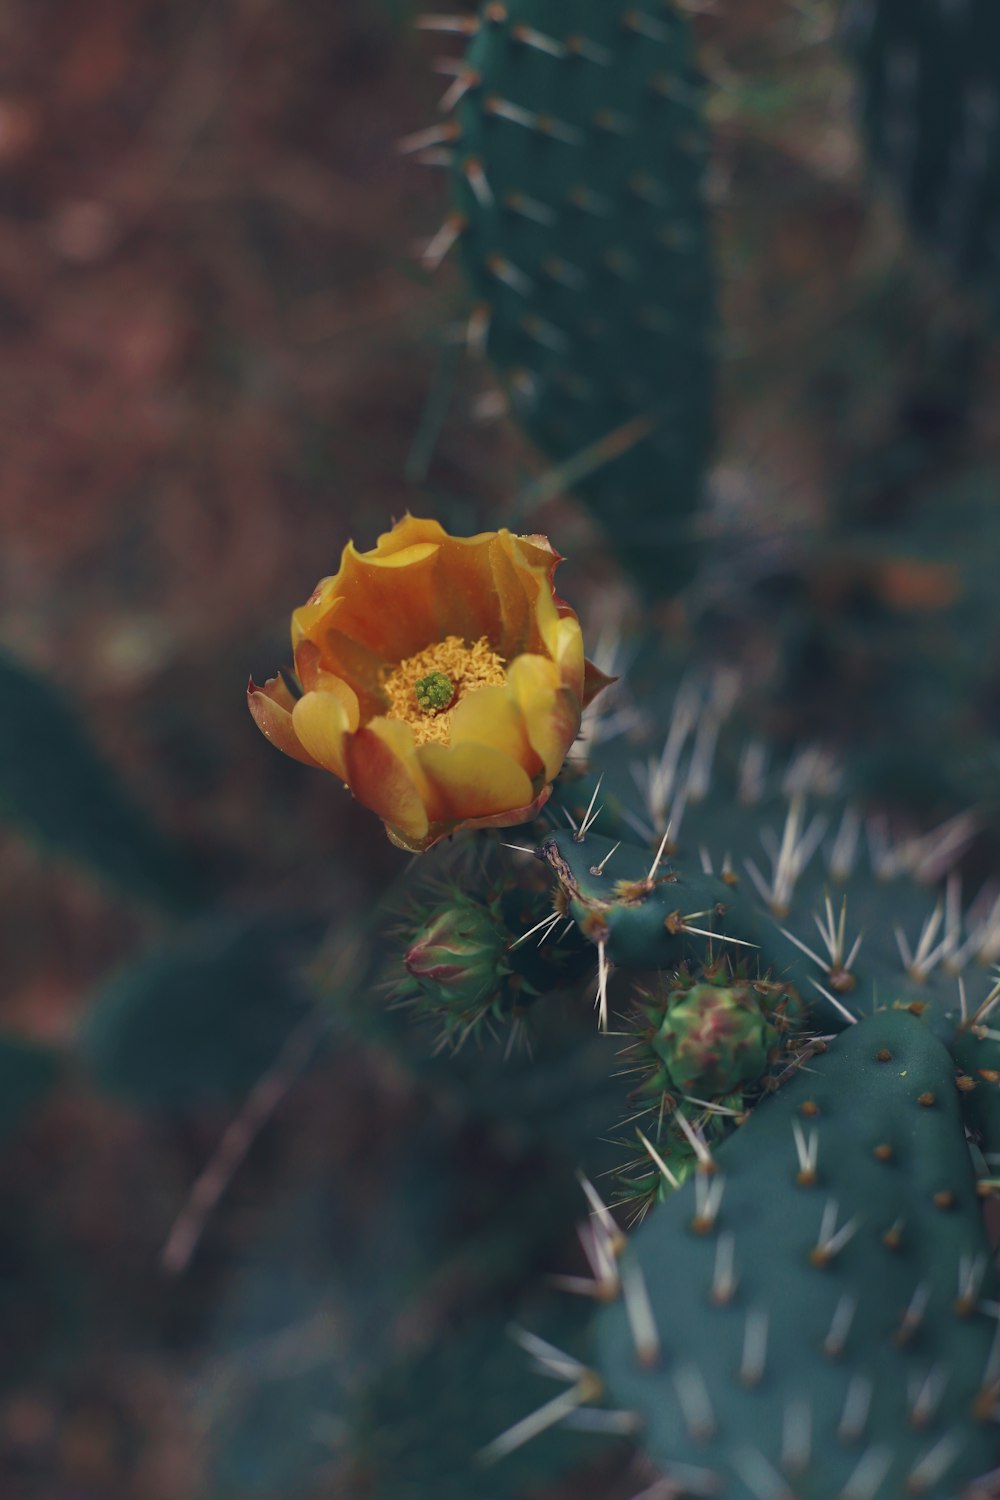 eine gelbe Blume auf einem grünen Kaktus